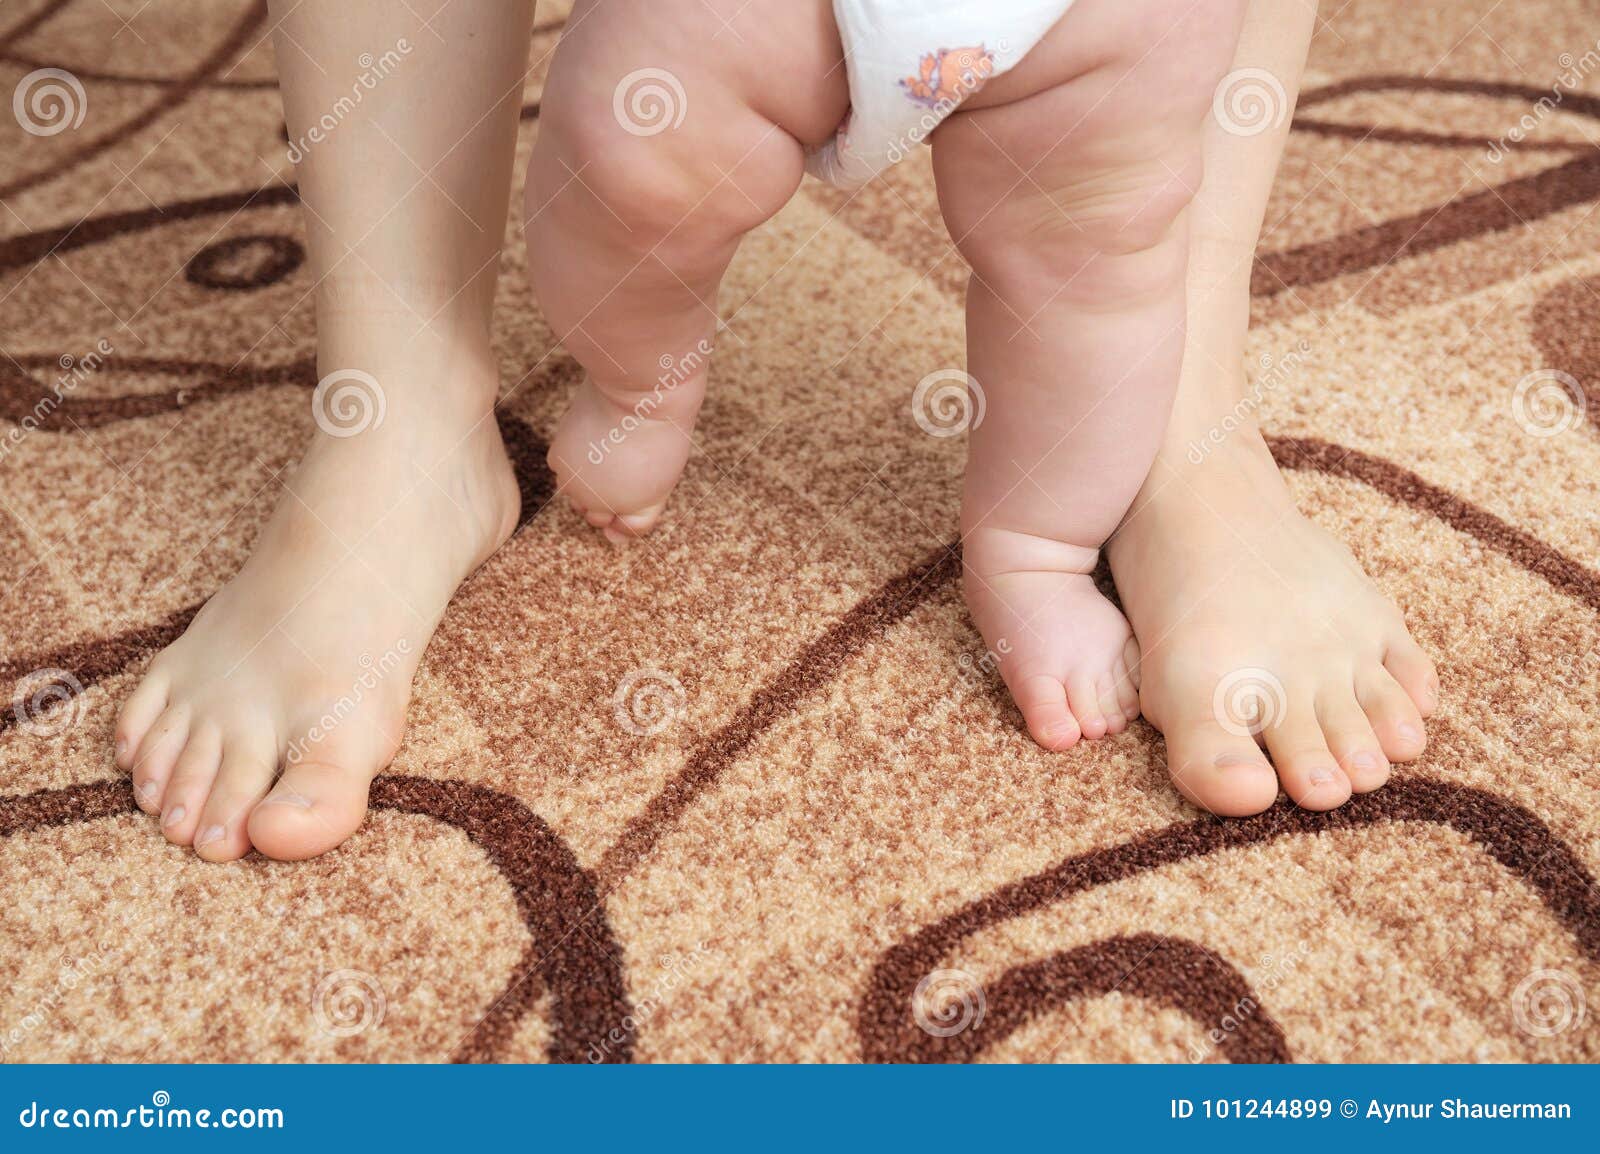 Ноги мамы для детей. Ножки шагающего малыша. Ребенок под ногами мамы. Маленькие ножки шагают. Ребенок под ногой матери.